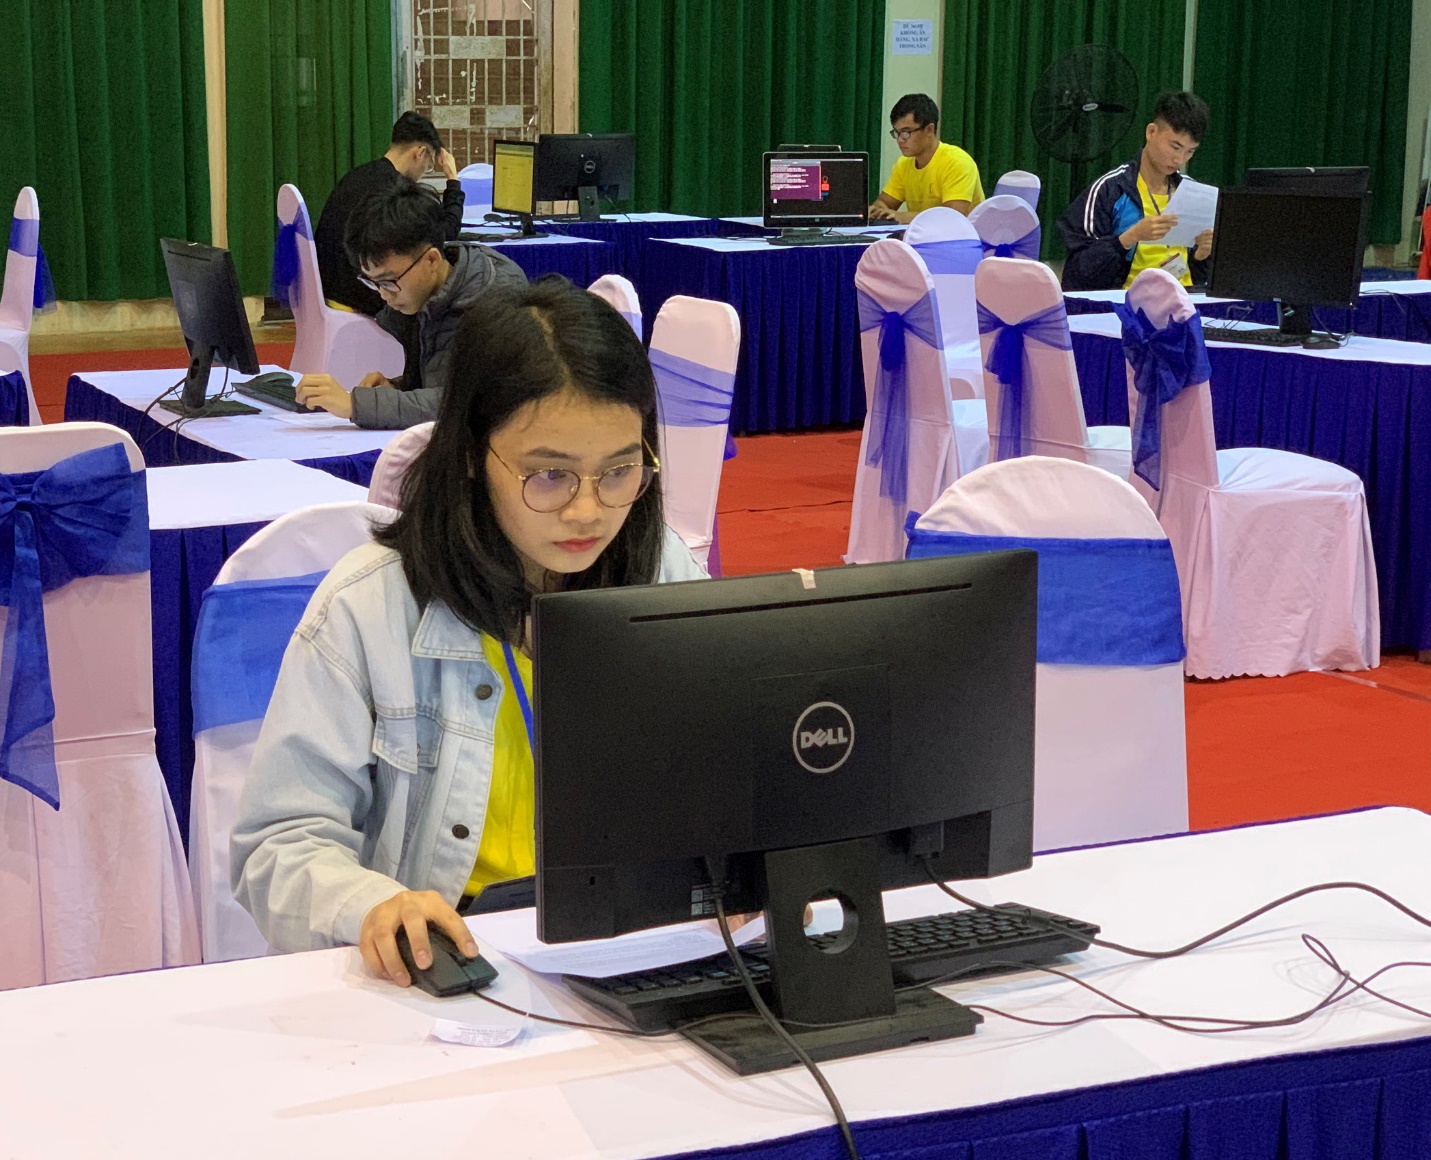 Đội tuyển Công nghệ thông tin SIU đạt kết quả cao tại OLP’19, Procon và ICPC Asia Danang